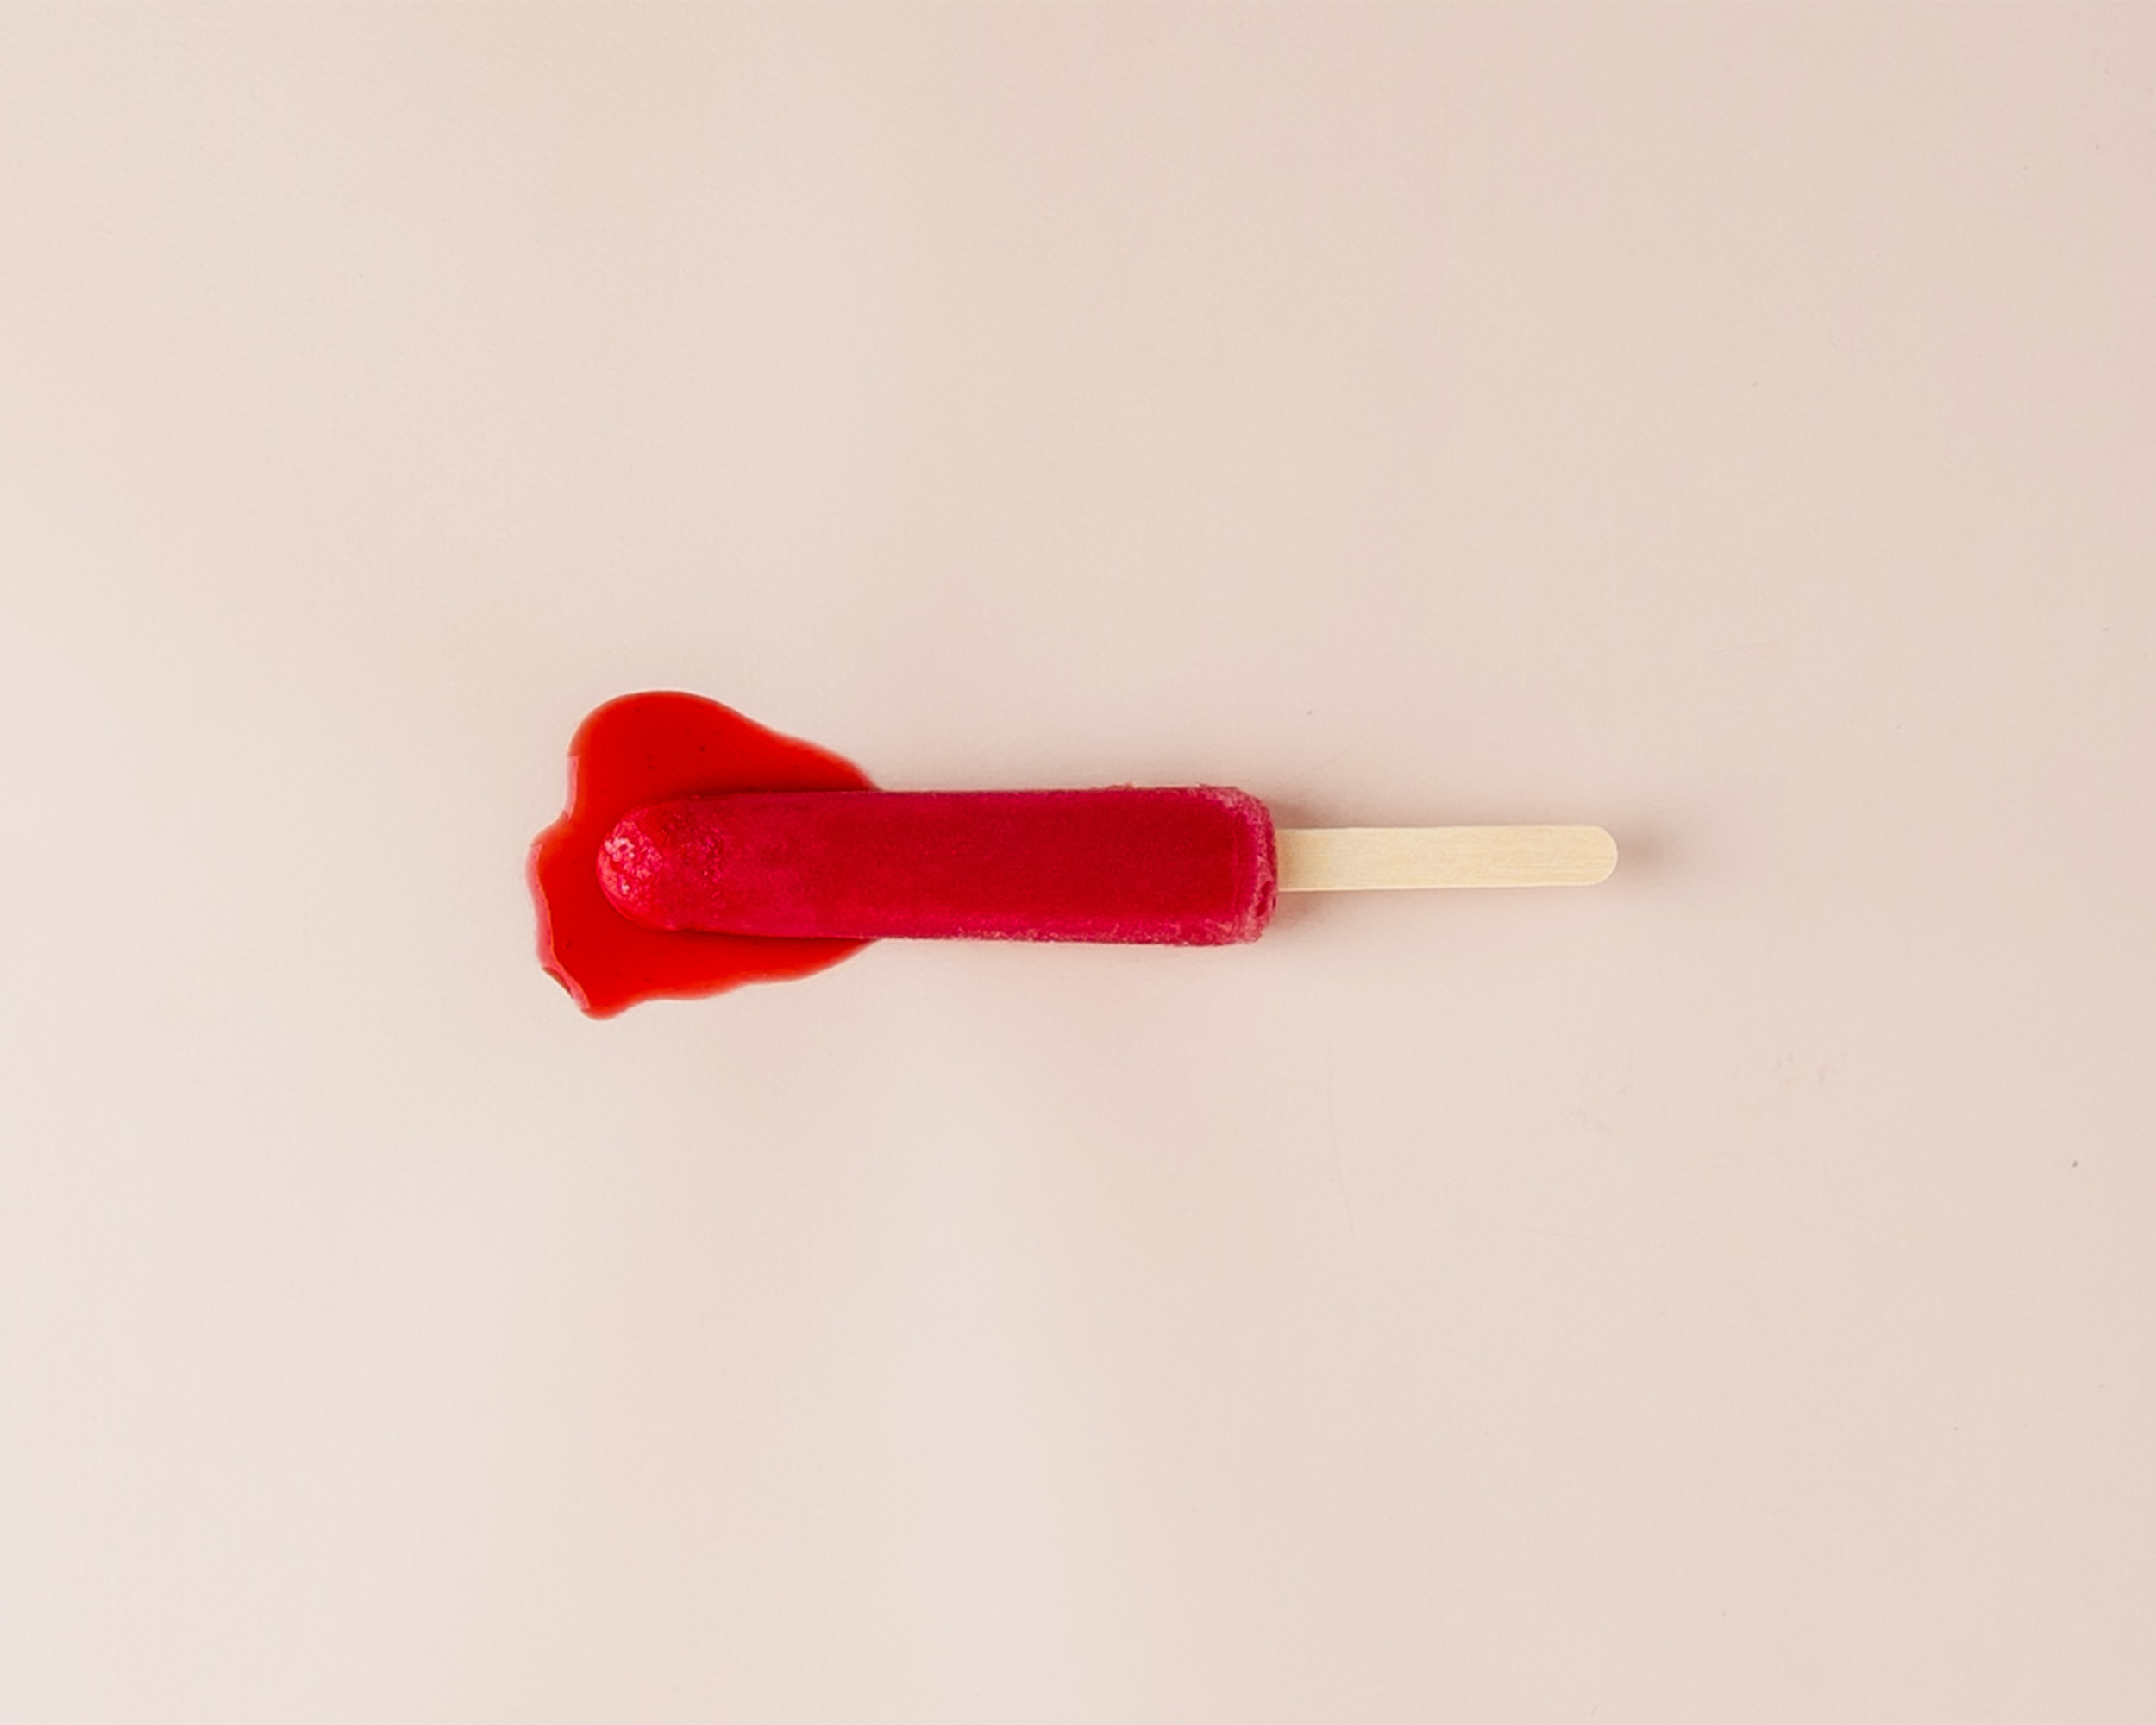 menstruatie uitgebeeld in de vorm van een rood ijsje